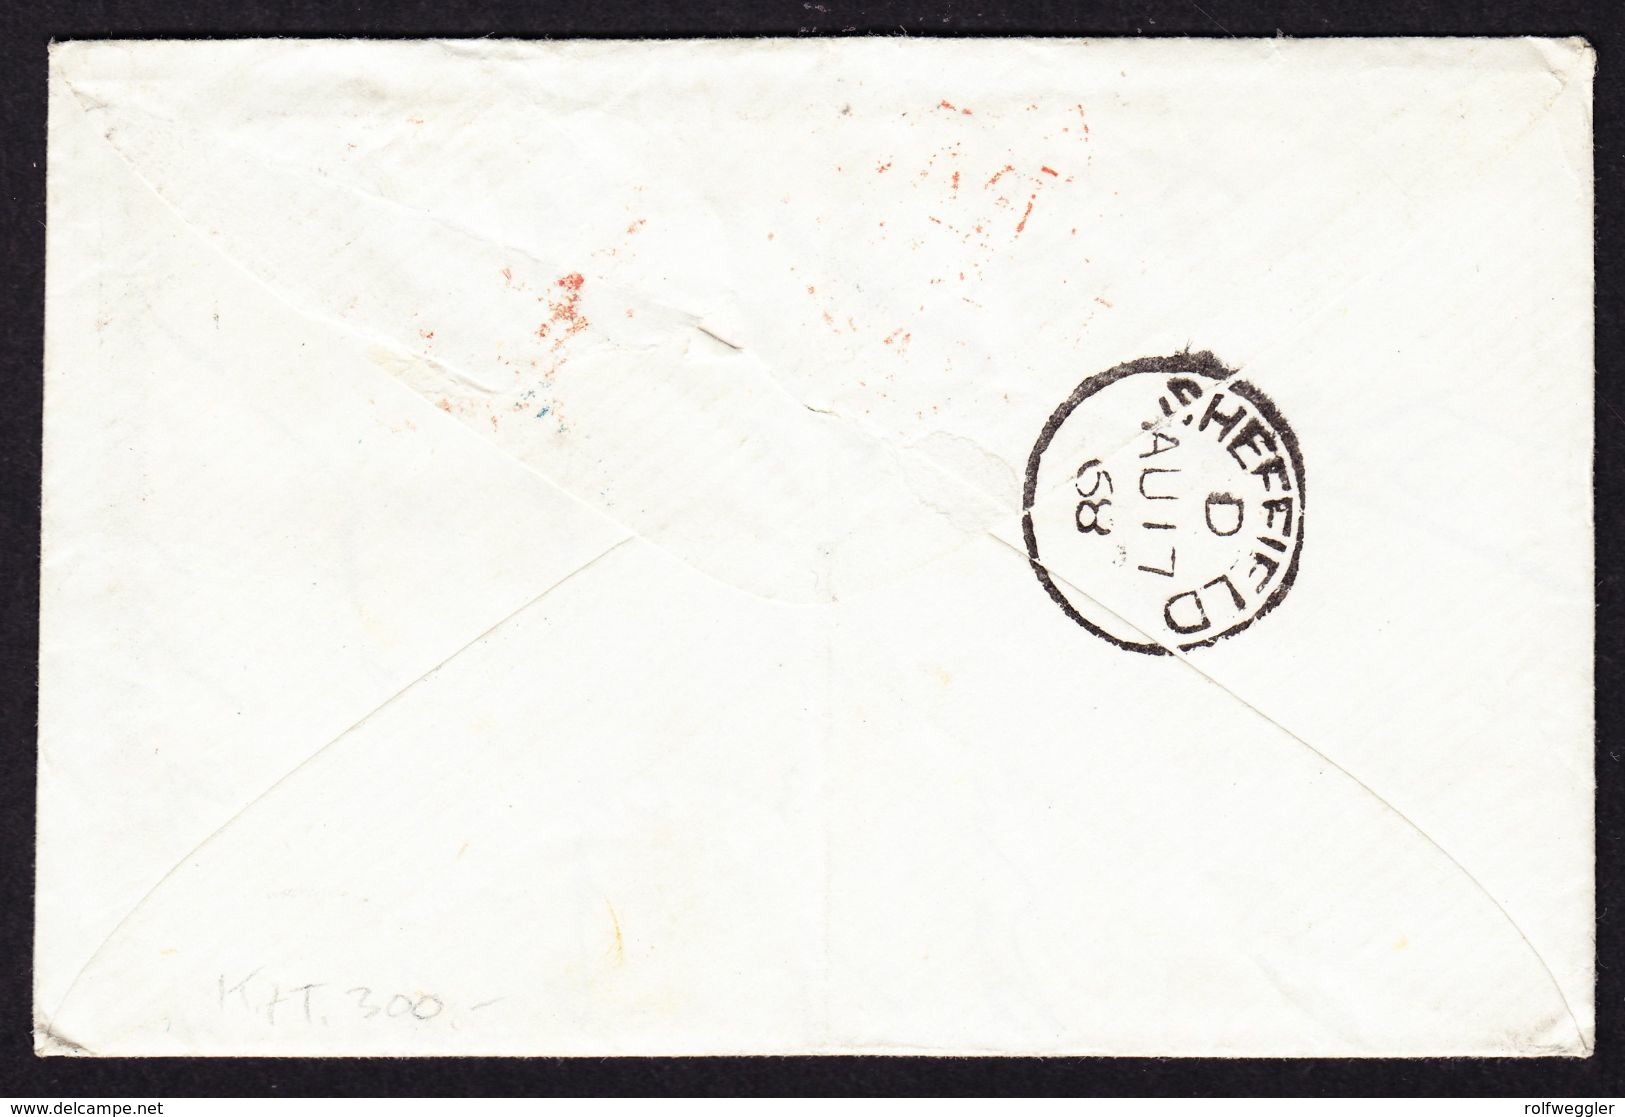 1868 Incoming Mail. 4 Briefe nach Sheffield. 2 aus der Schweiz, 1x aus Paris und 1x aus Beverley mit